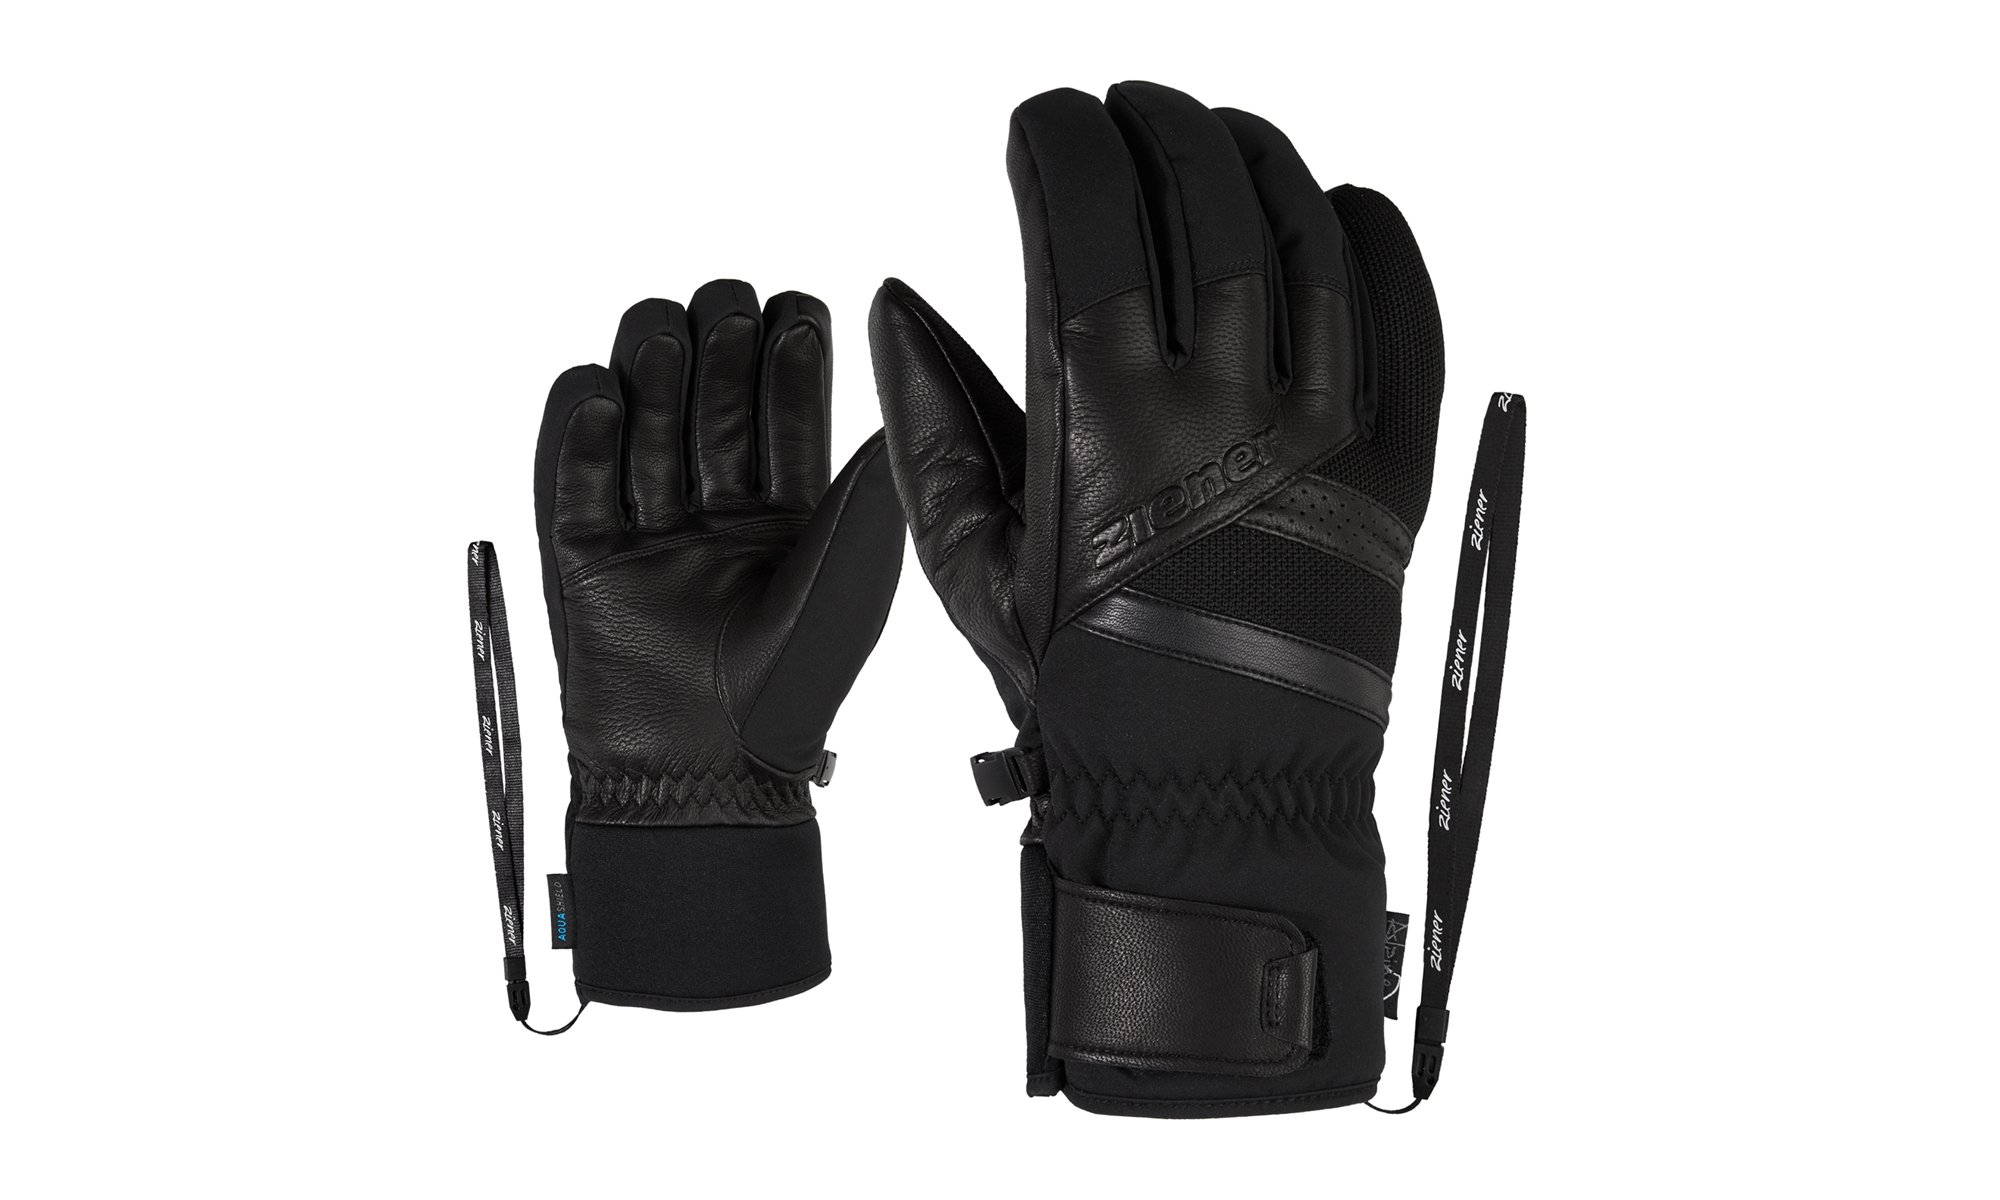 extra warm ski gloves